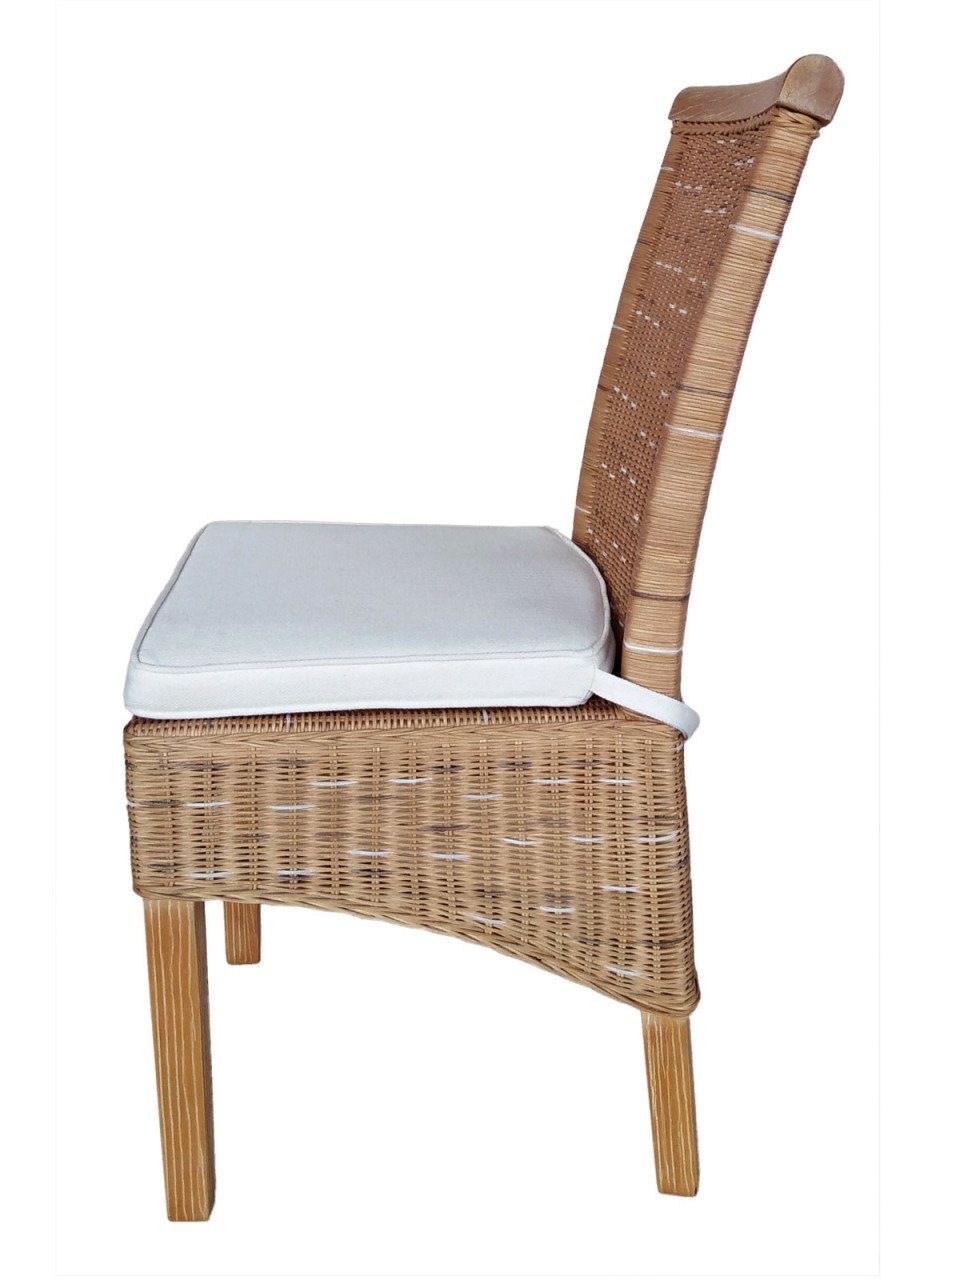 Perth soma S, Soma Sessel Rattanstühle Sessel Esszimmer-Stühle 6 Sitzmöbel Stuhl Set weiß braun oder Stück Sitzplatz